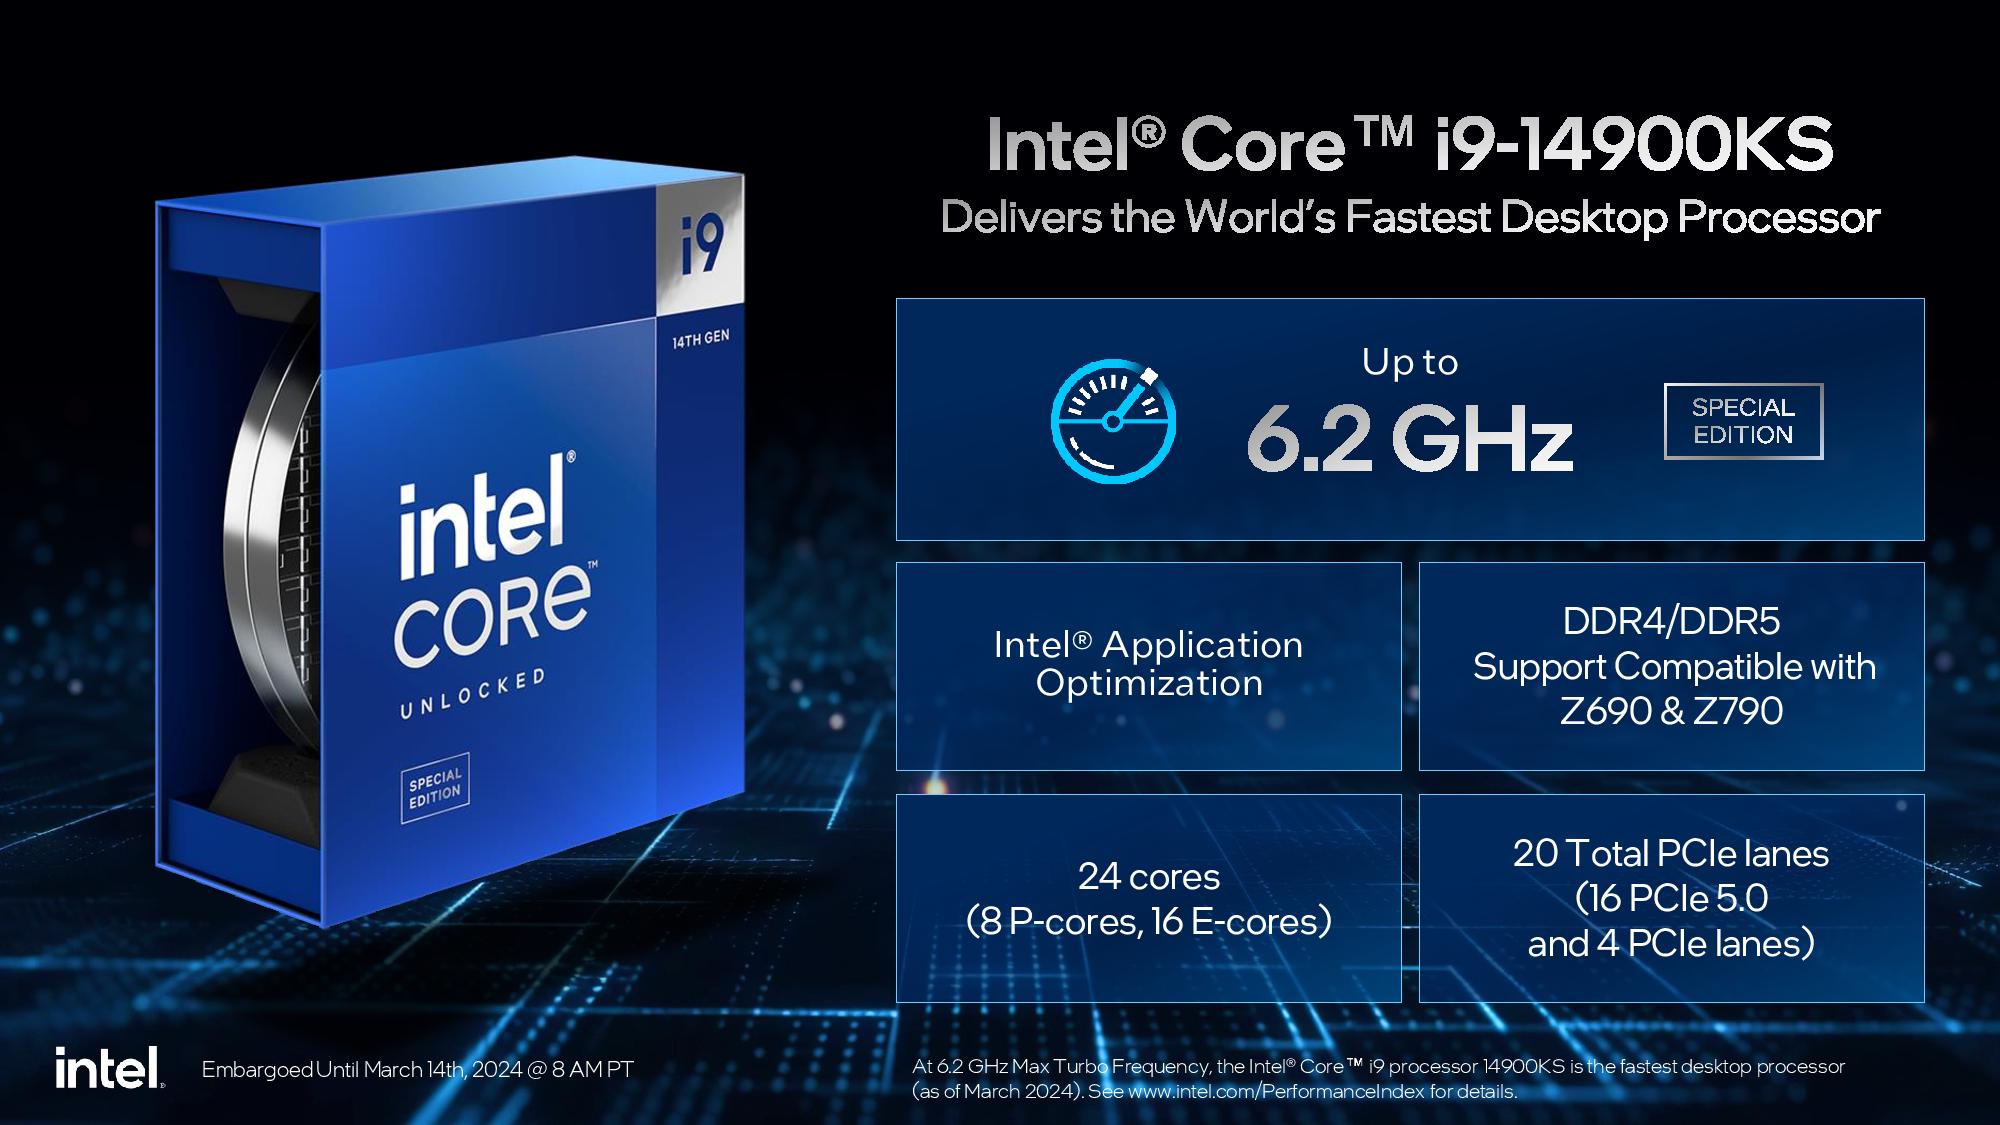 La course aux mégahertz se poursuit : Intel Core i9-14900KS atteint une puissance de 6,2 GHz dès sa sortie de la boîte.